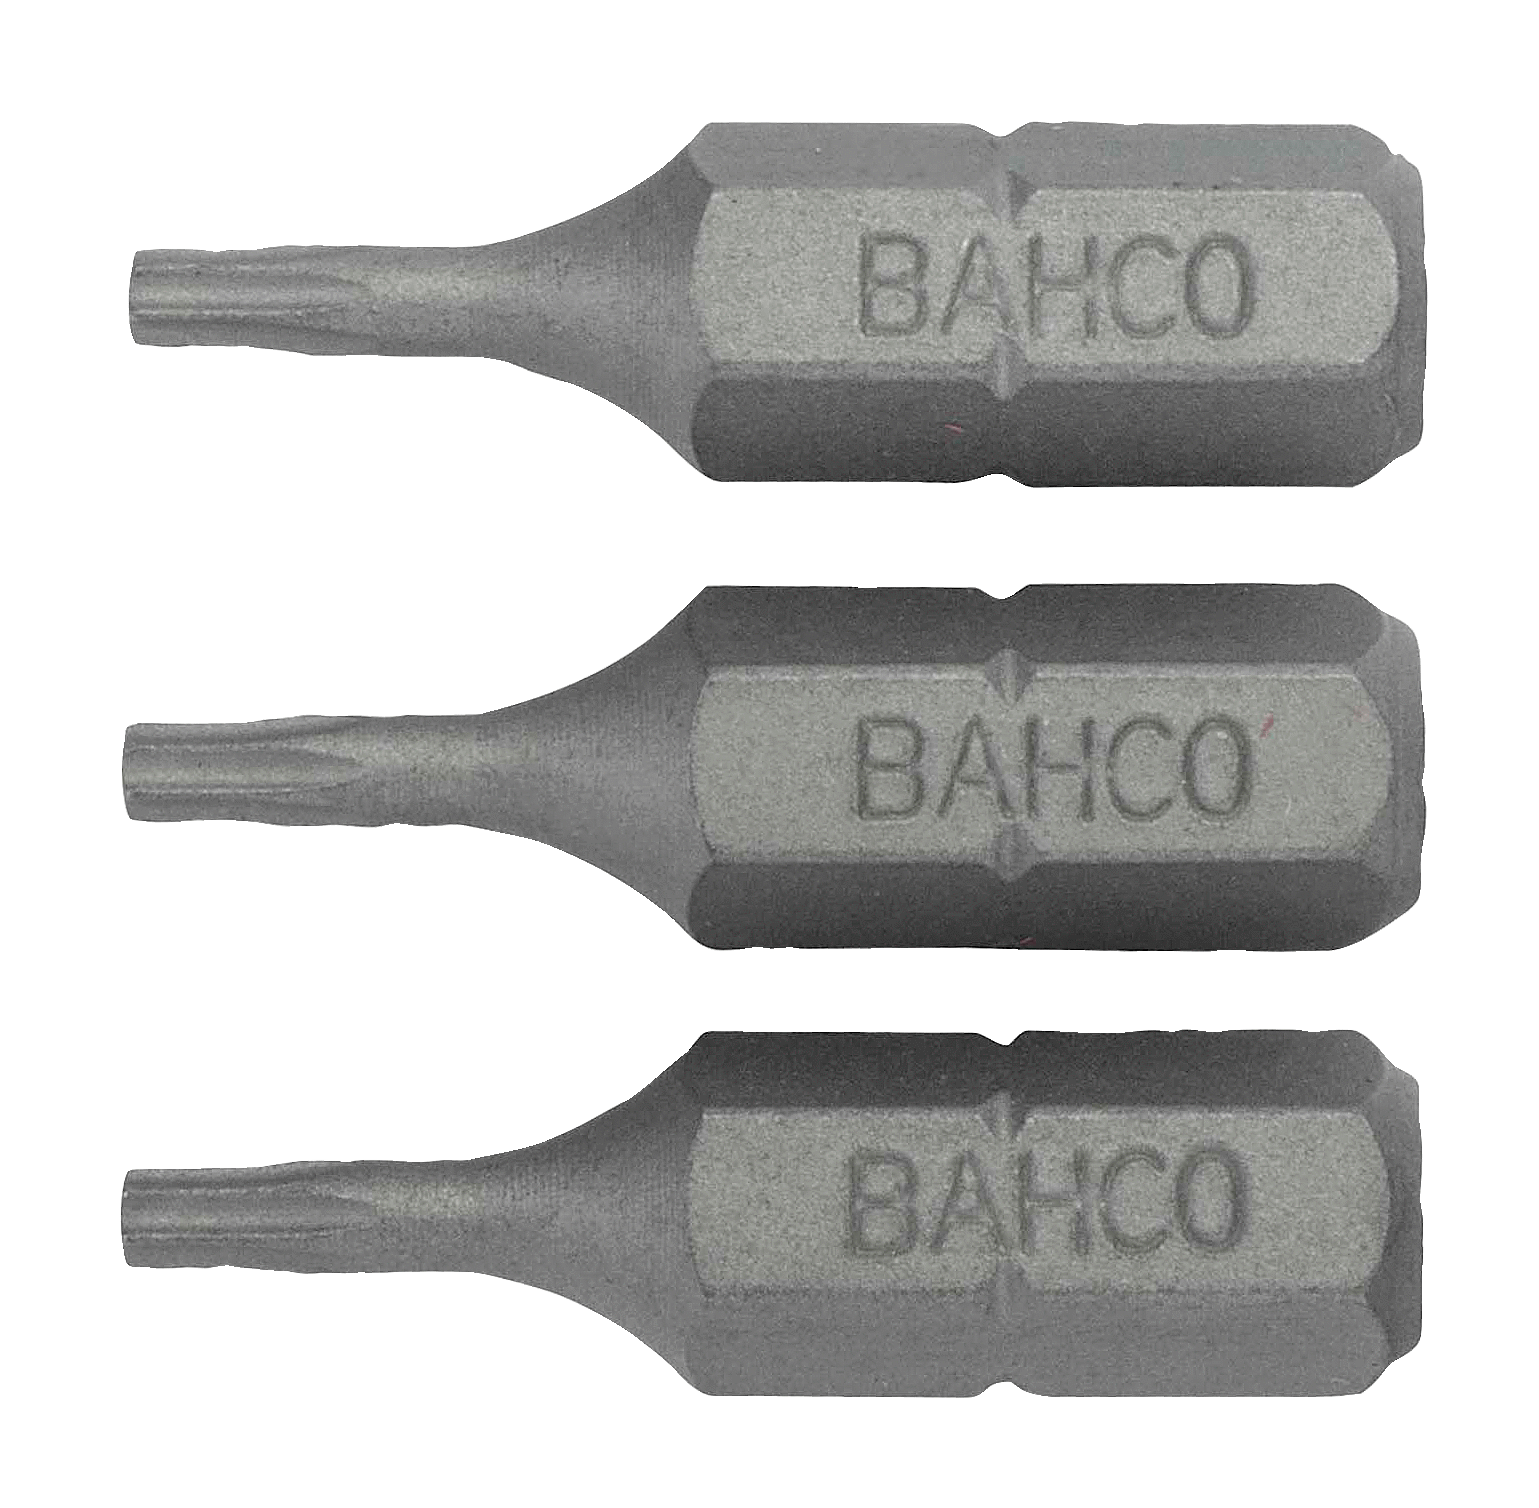 картинка Стандартные биты для отверток Torx® TR, 25 мм BAHCO 59S/TR20 от магазина "Элит-инструмент"